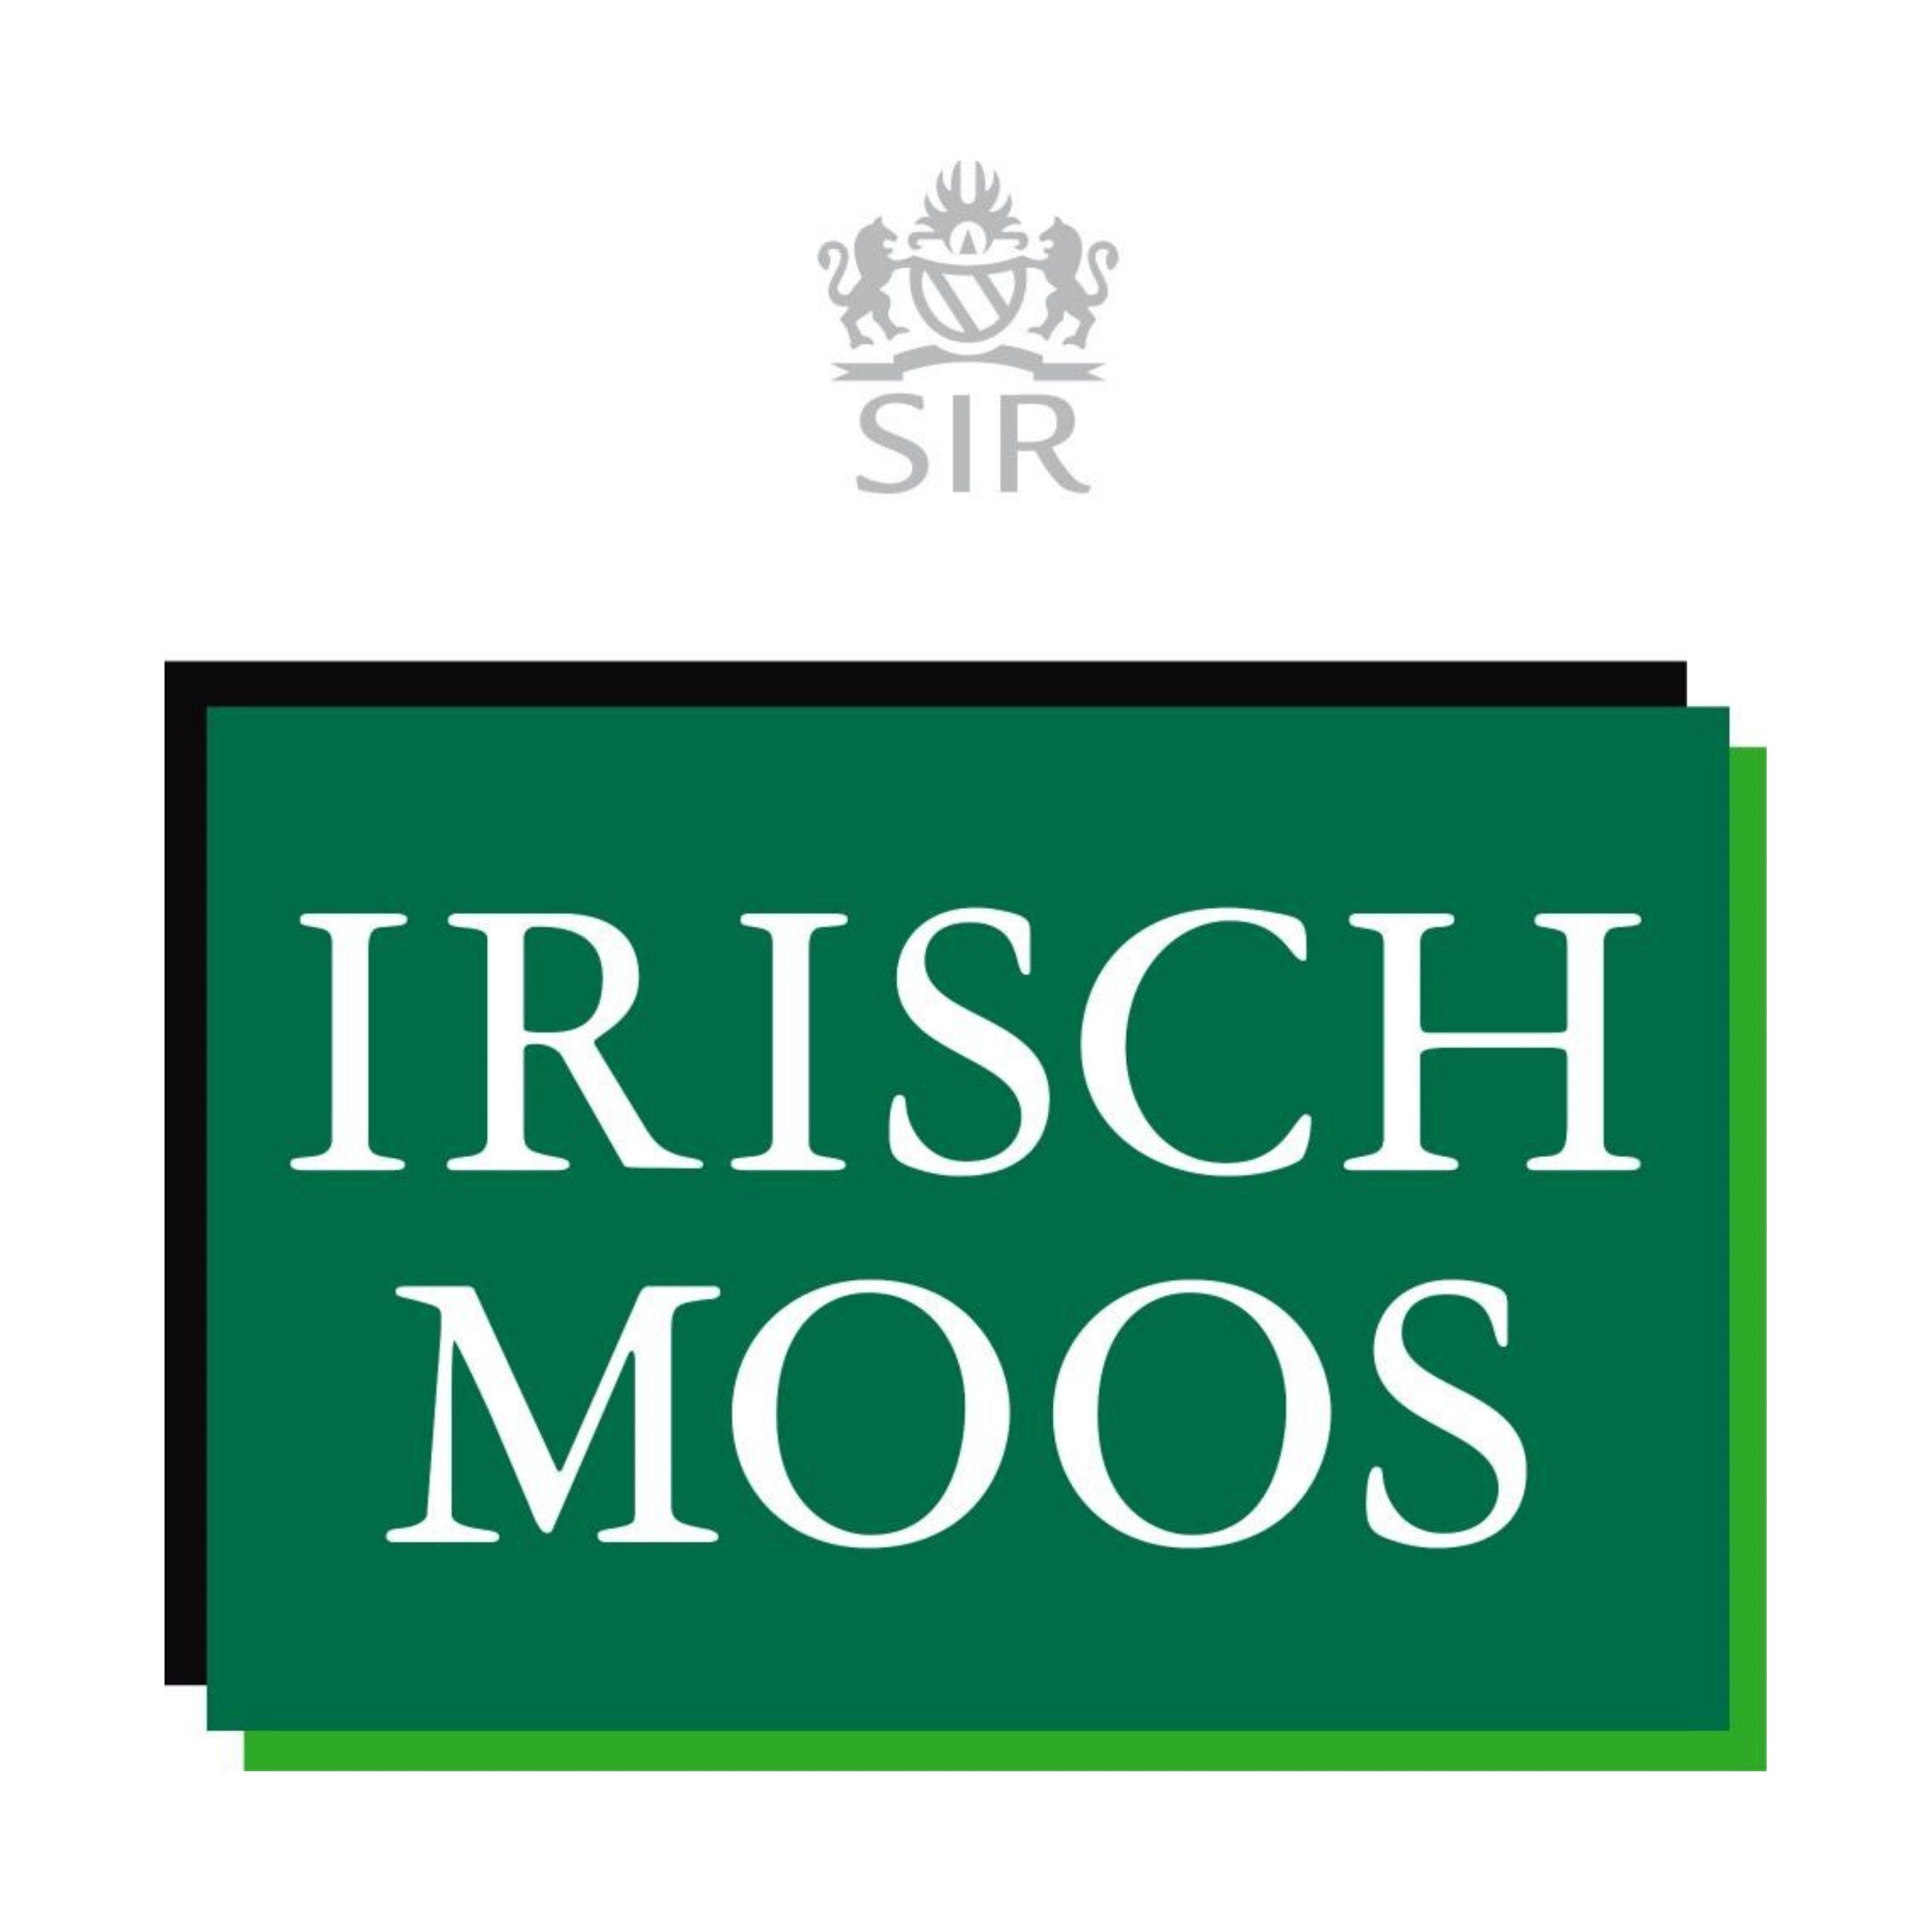 MOOS Sir ml Shave Irisch Moos 150 IRISCH After Lotion Gesichts-Reinigungslotion SIR